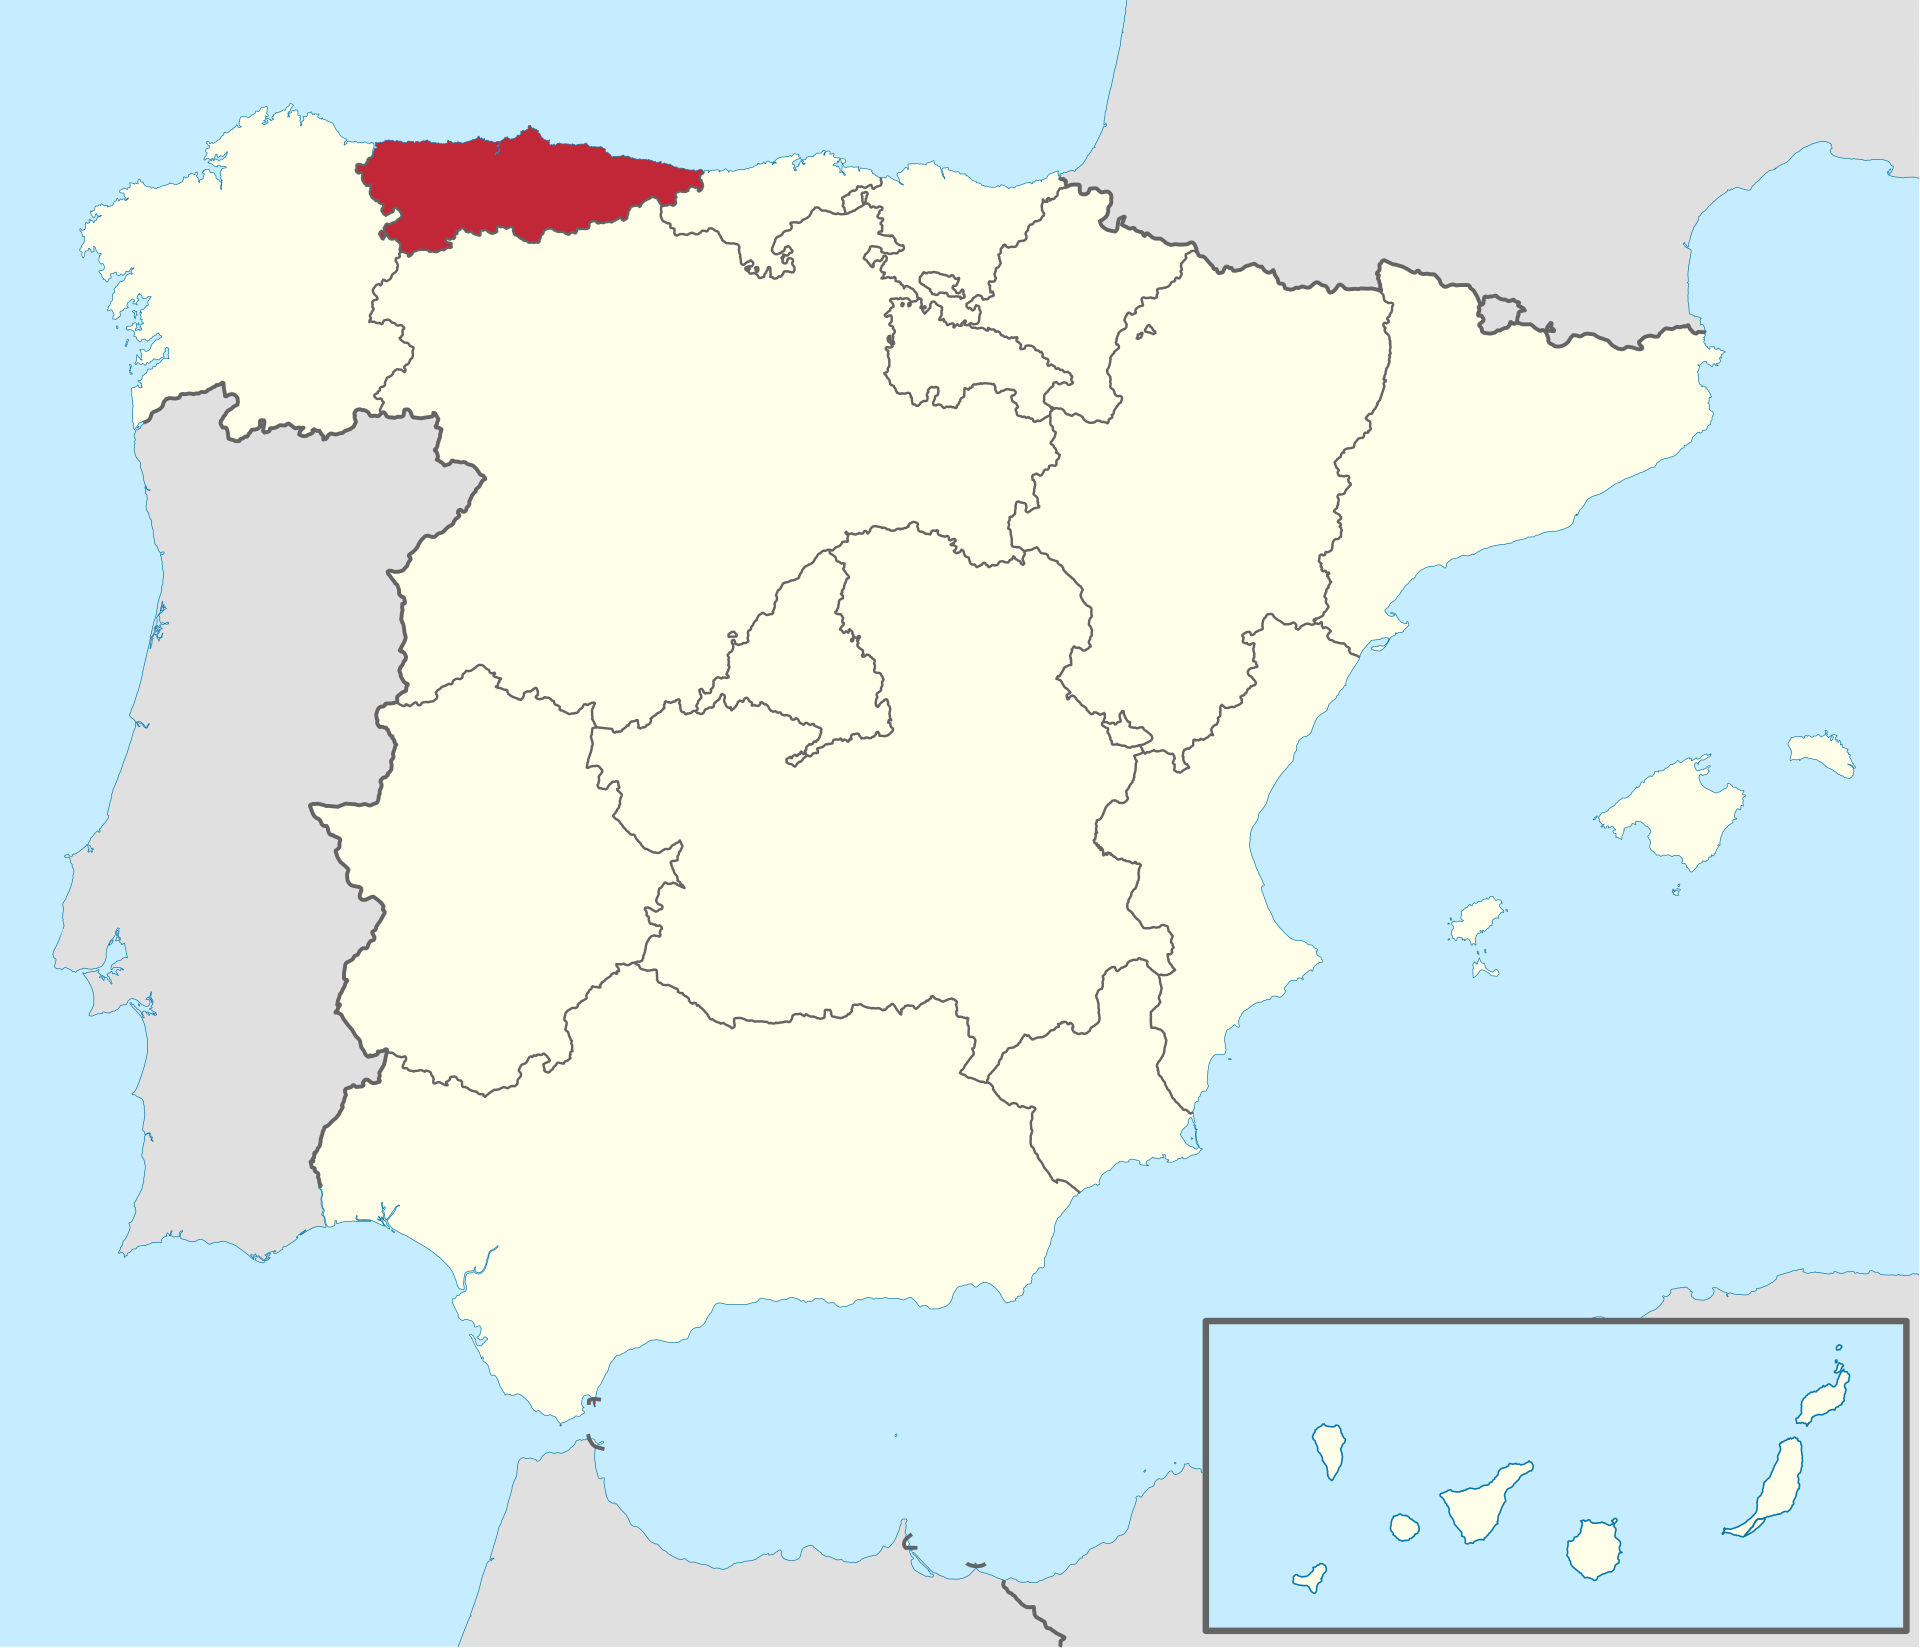 Childrens Playgroun Urbex location or around the region Asturias, Spain